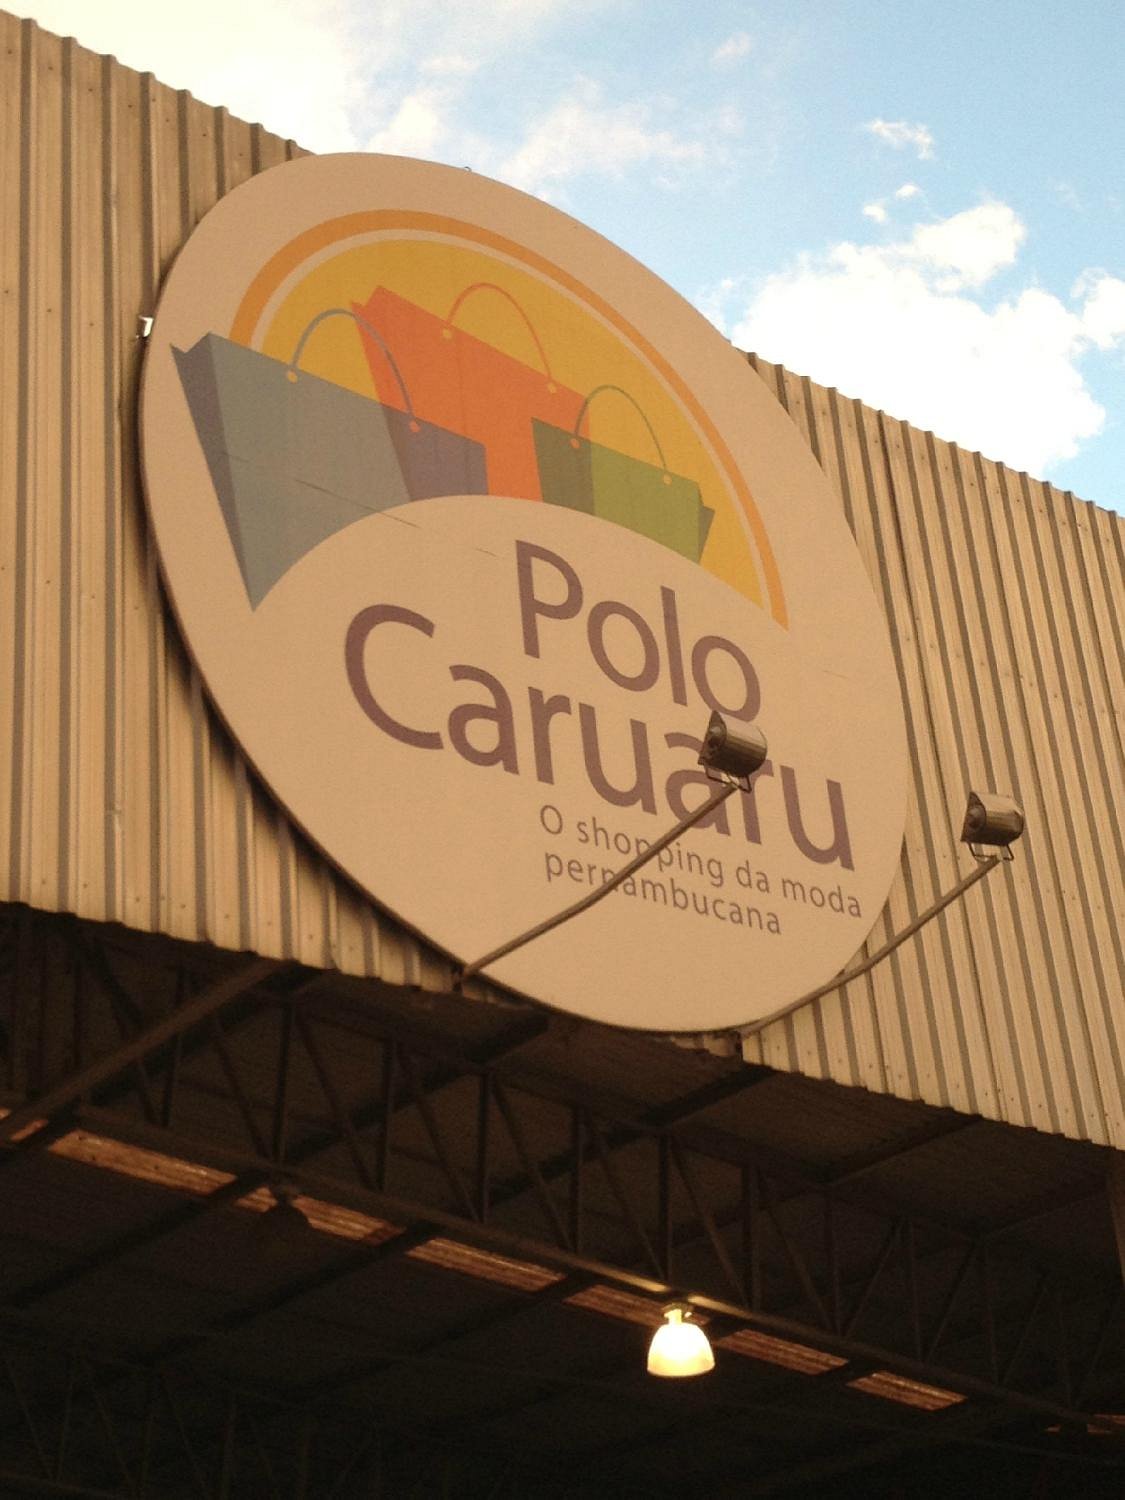 Polo Caruaru realiza programação especial para o feriado de São